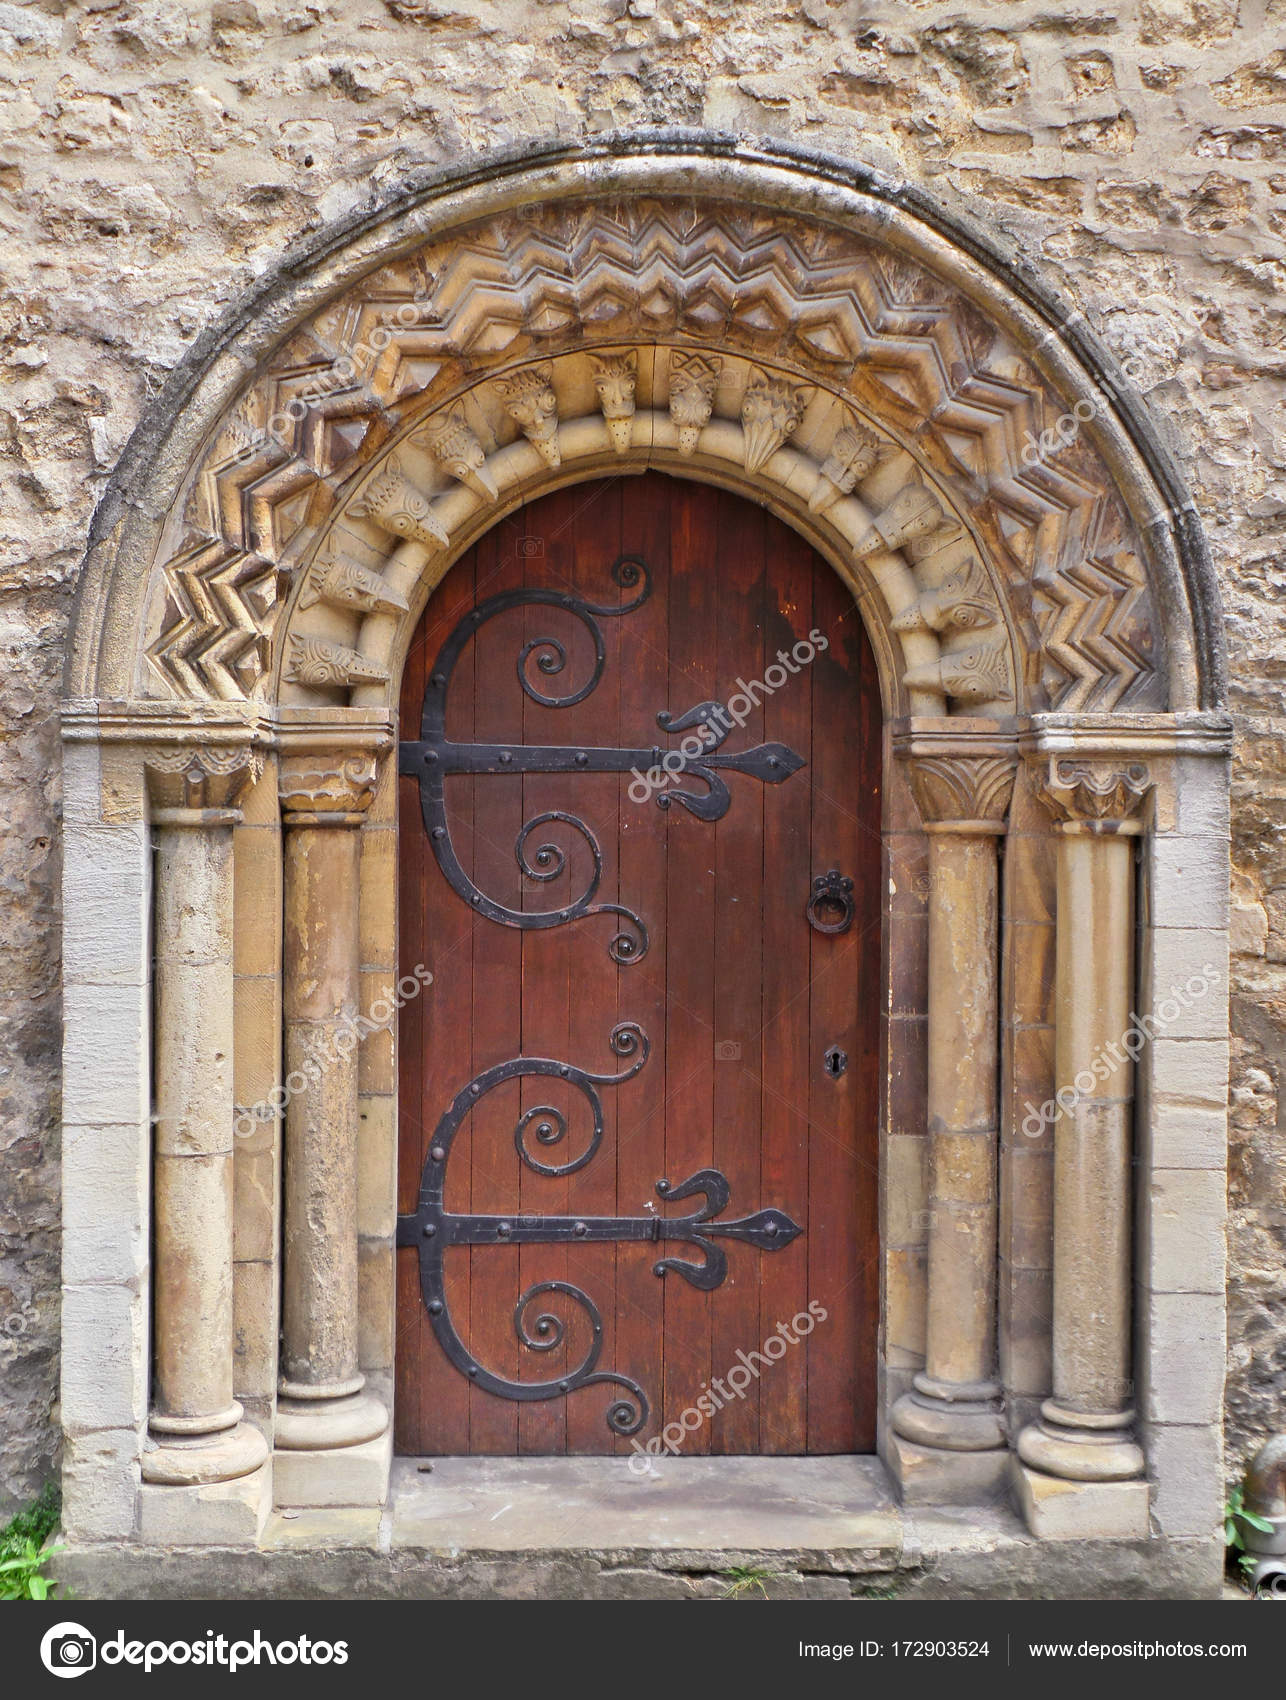 Church door photo